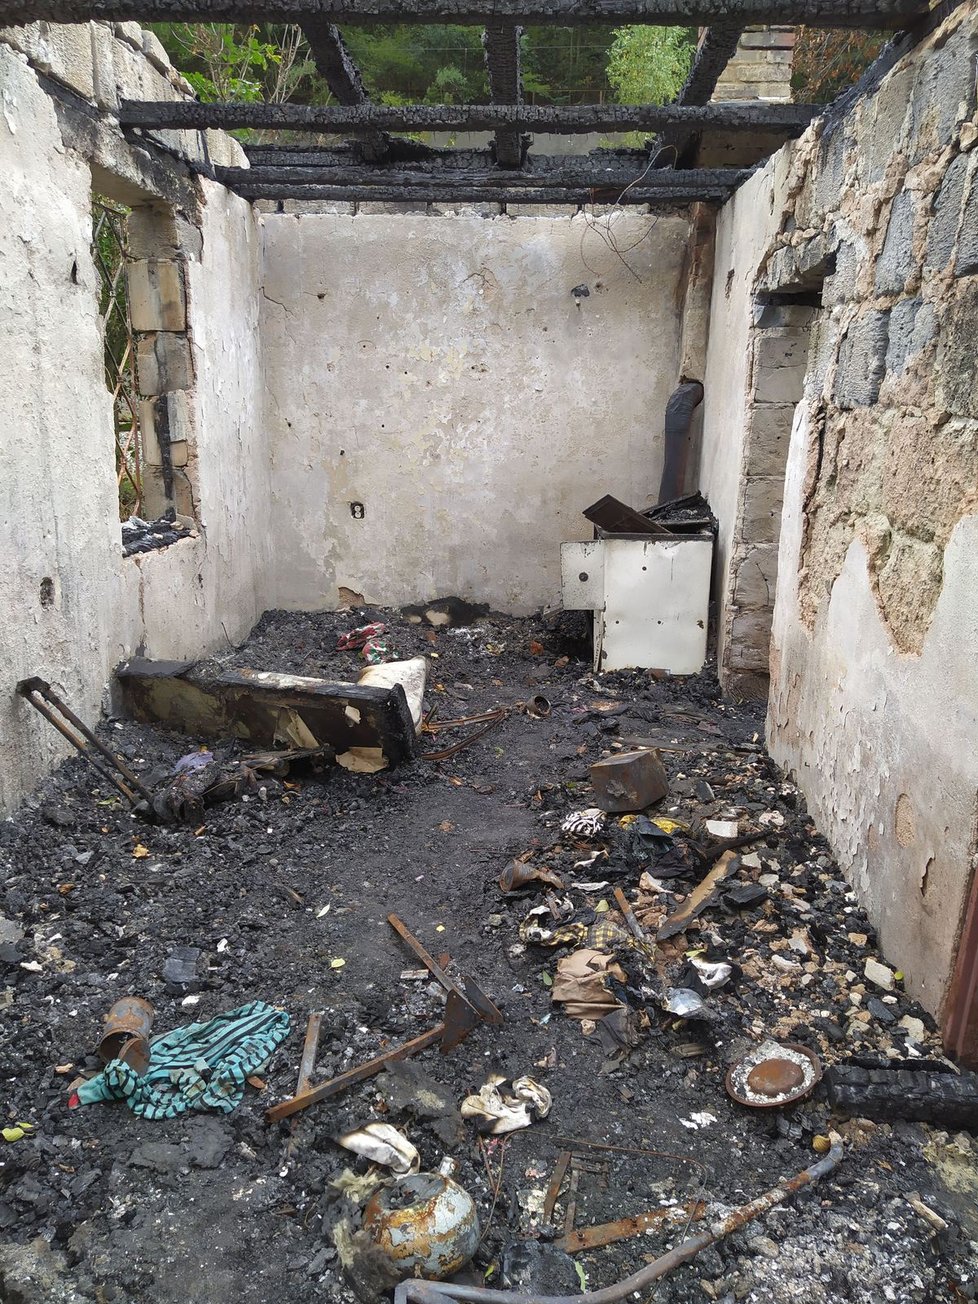 Útočníky, kteří domek zapálili a ztýraná zvířata nechali v plamenech, už policie obvinila.